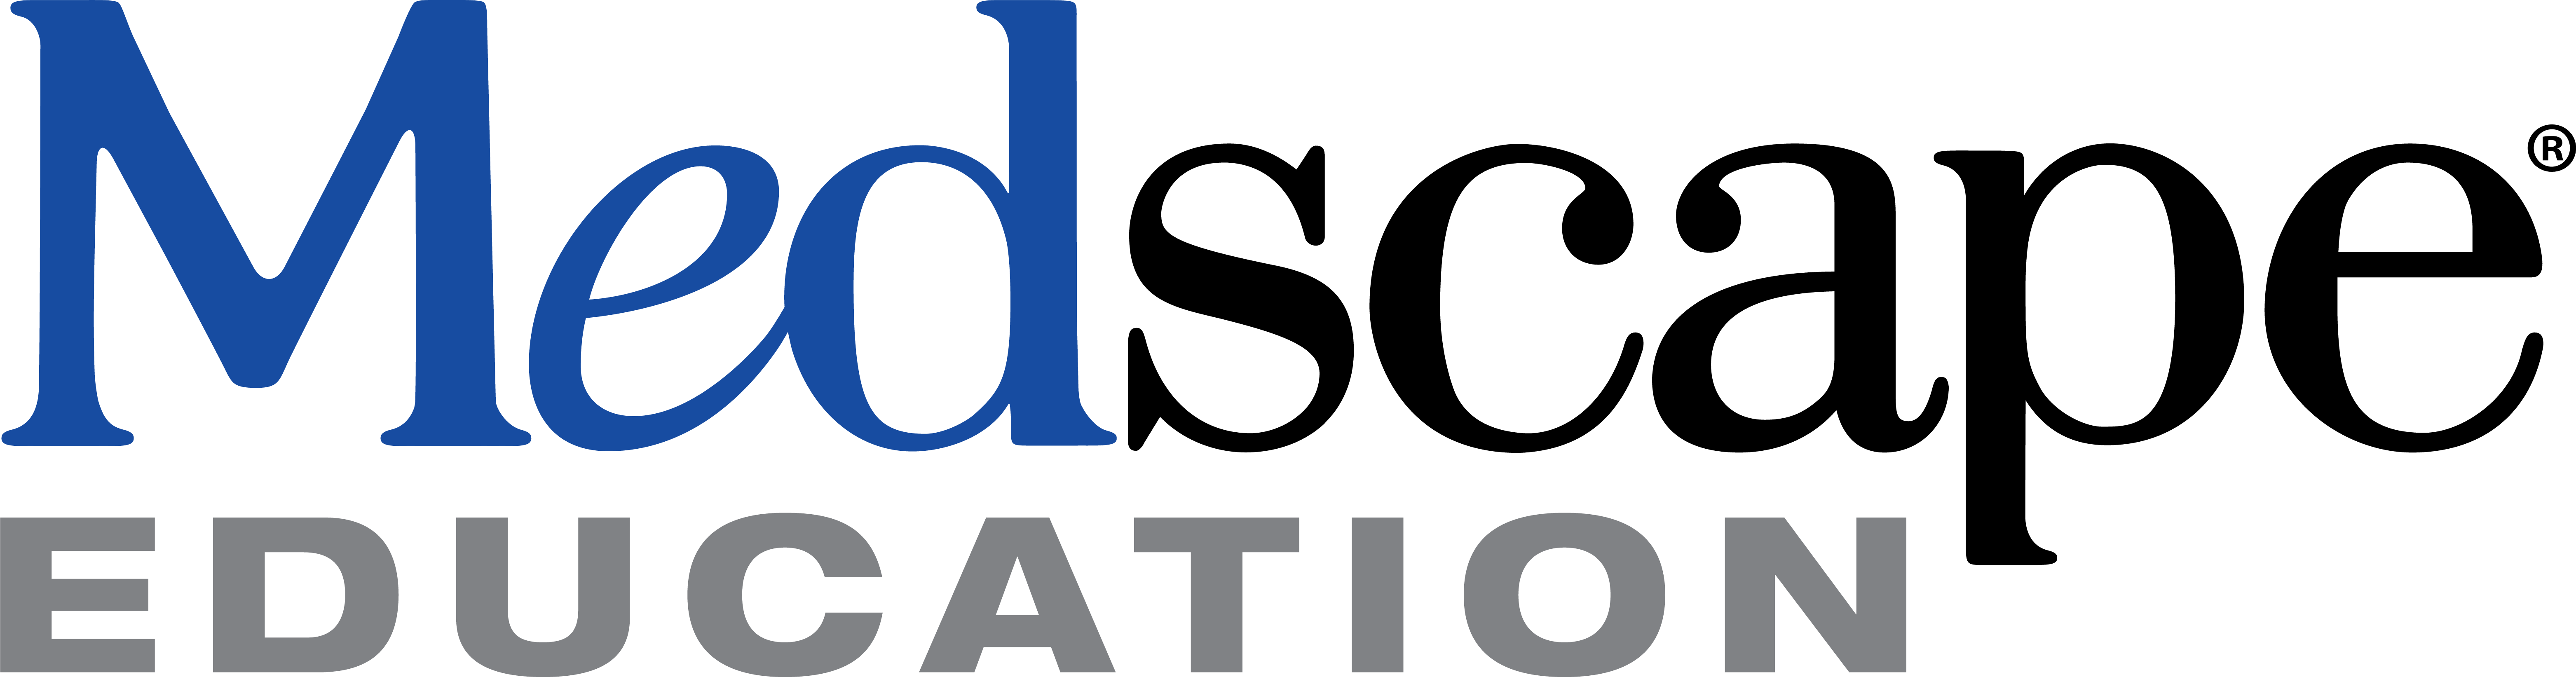 Medscape Education logo